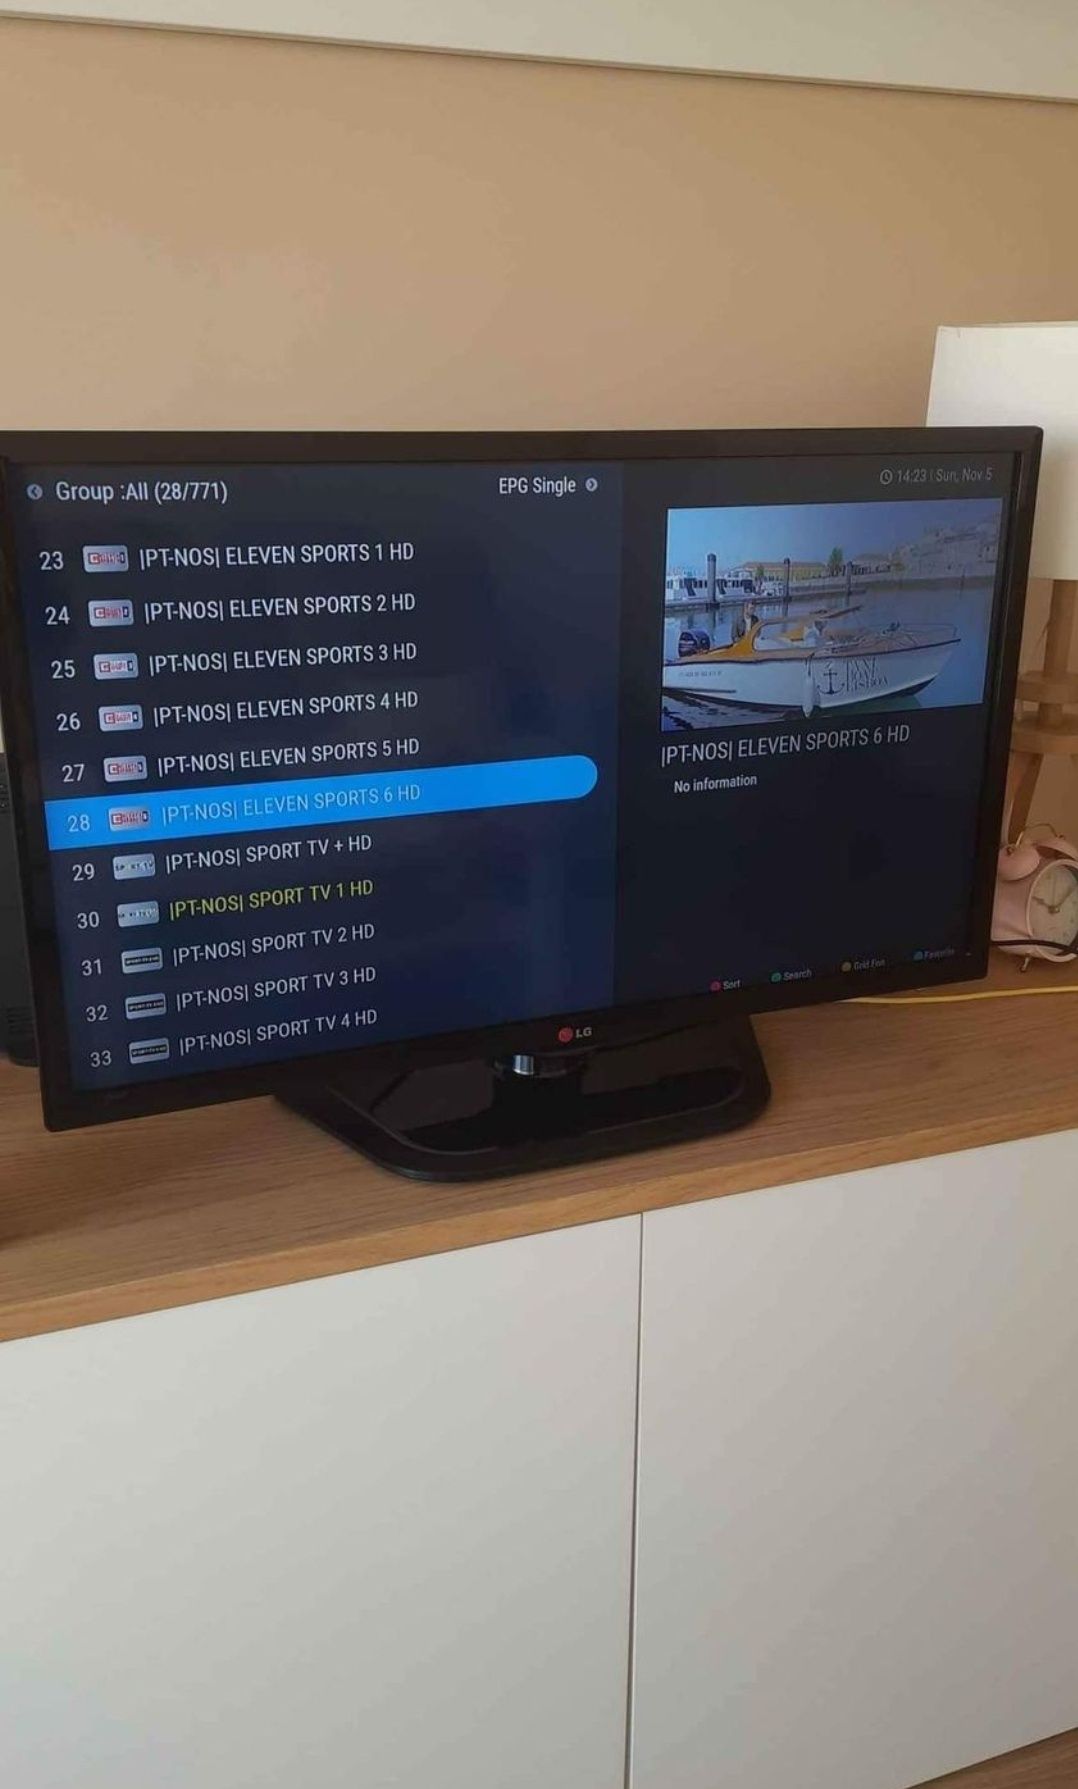 Box TV - Meelo XTV SE2 - 4K HD 2Gb/16Gb